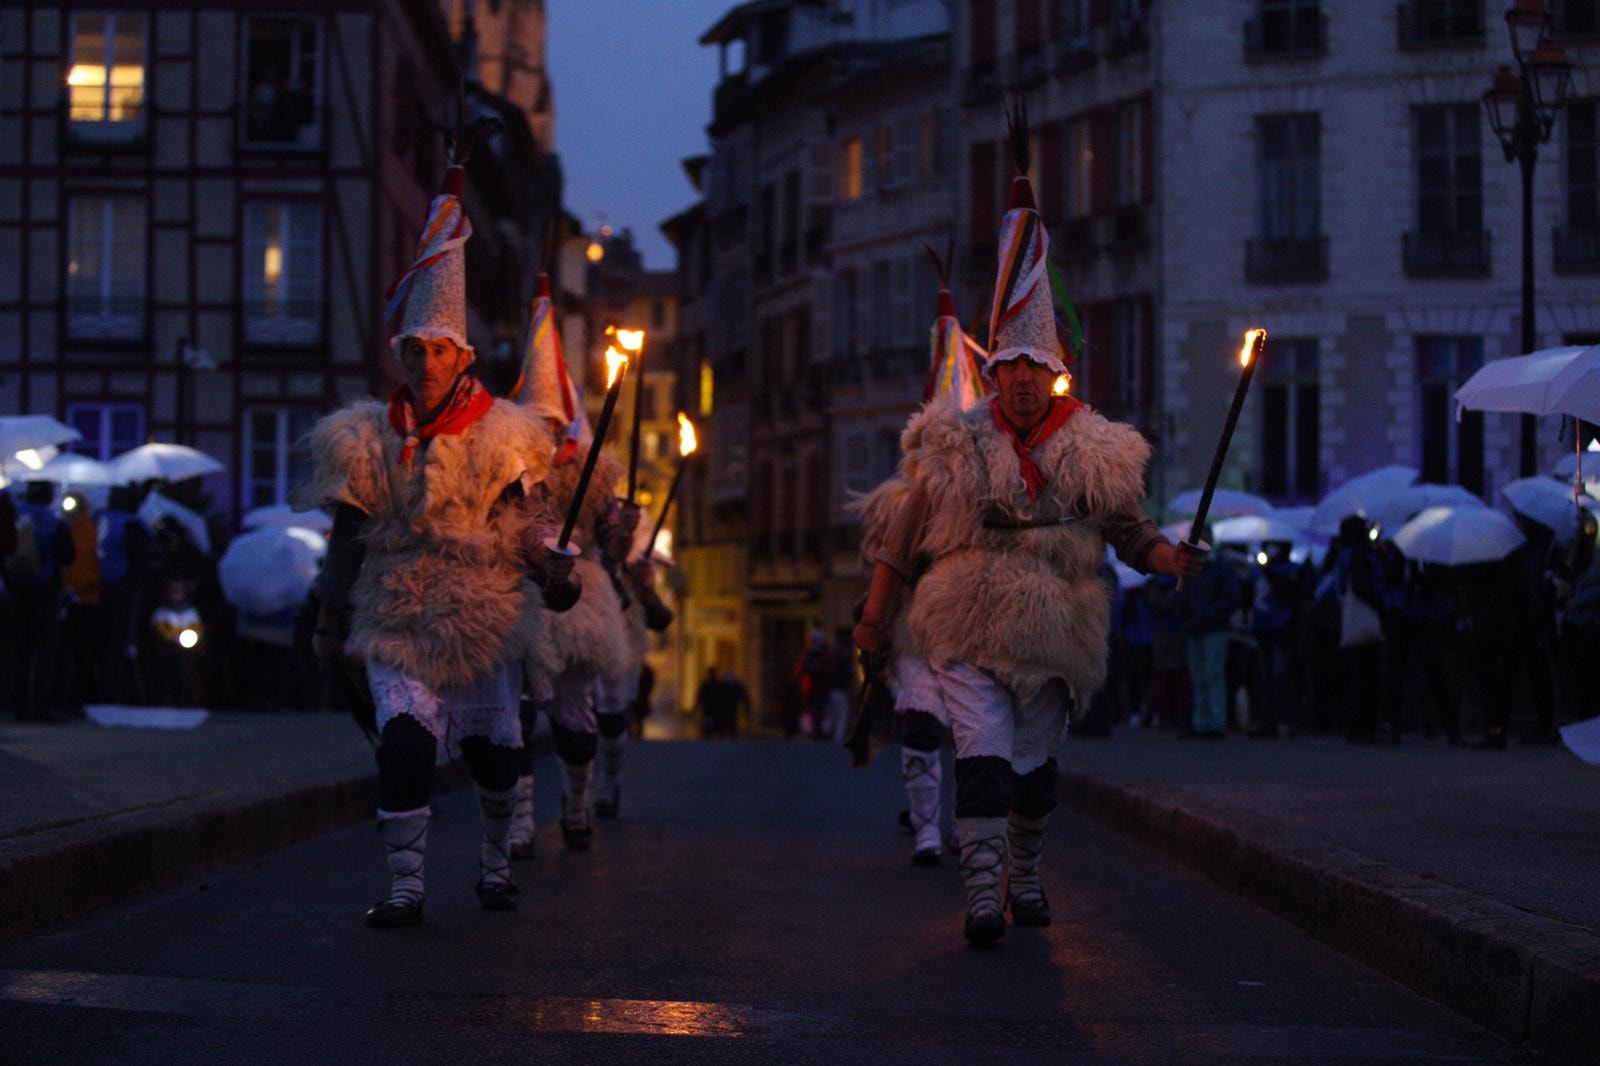 La tradition basque avec les joaldunak